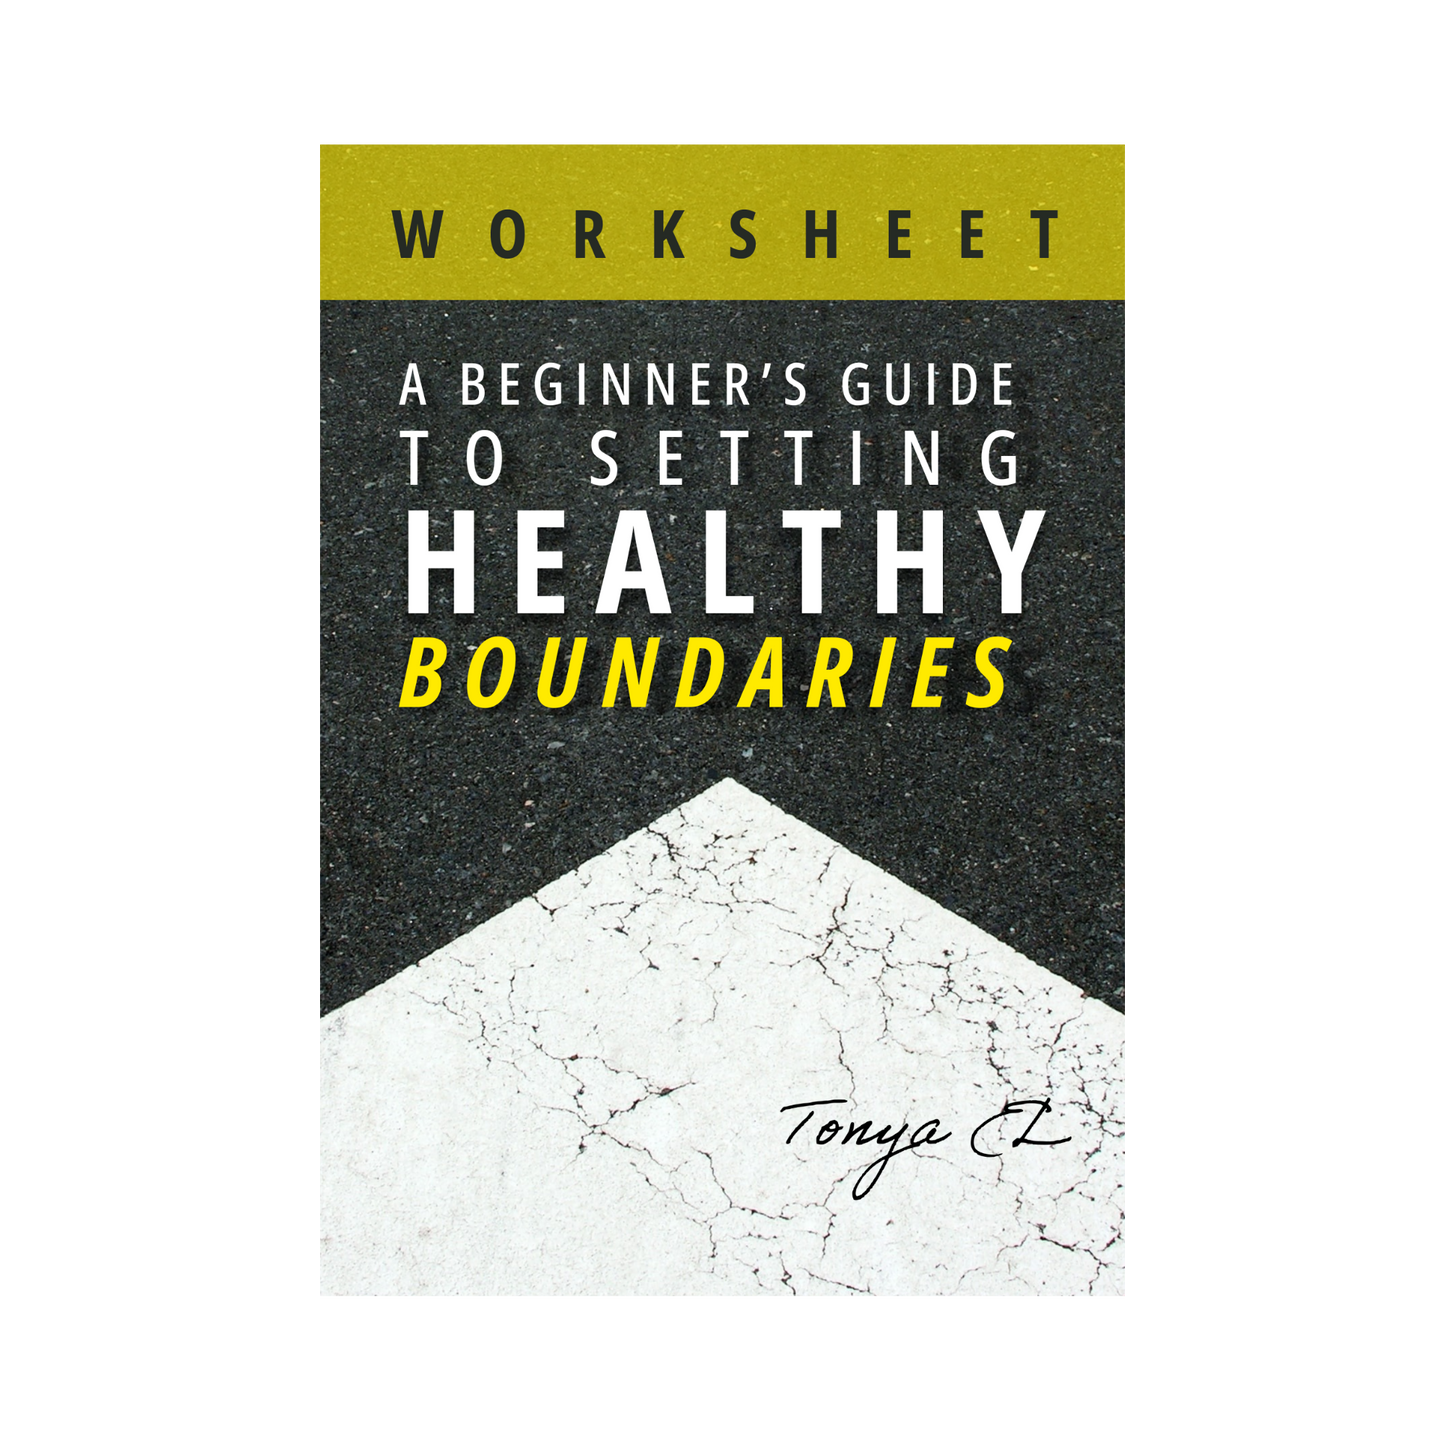 Healthy Boundaries - Worksheet